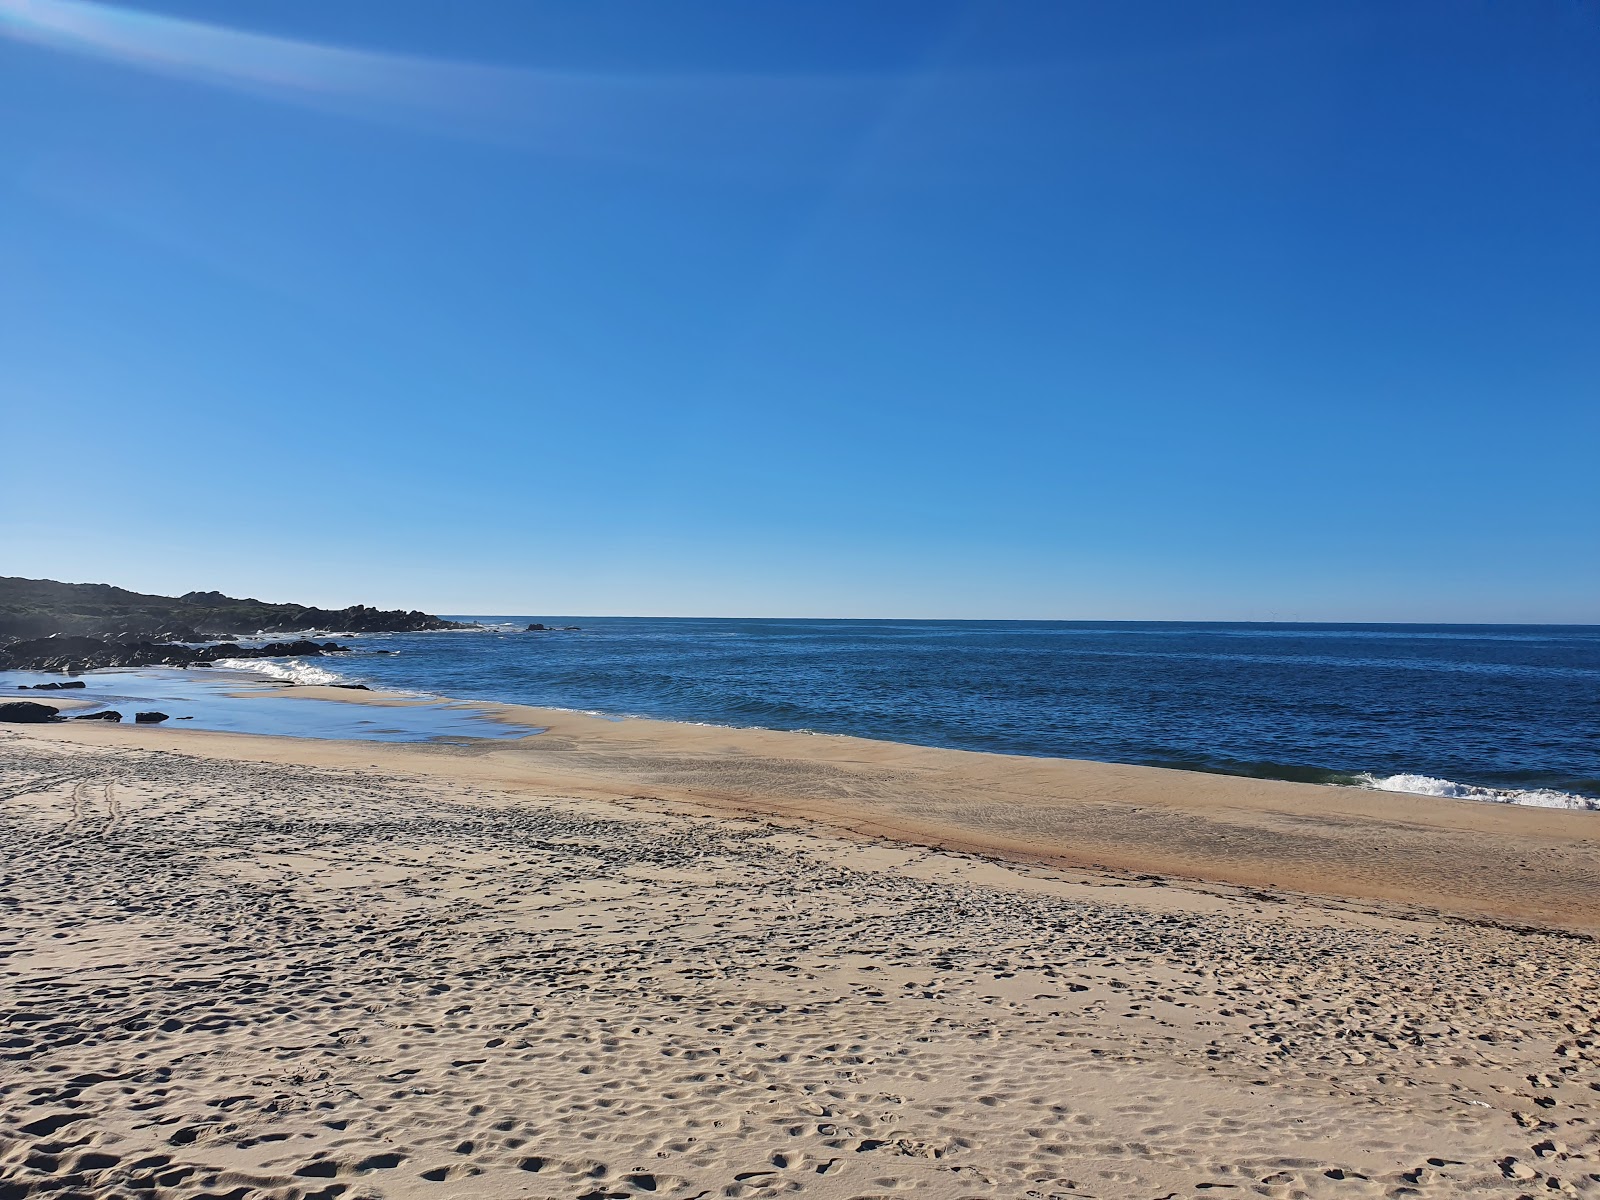 Praia do Paco'in fotoğrafı beyaz ince kum yüzey ile